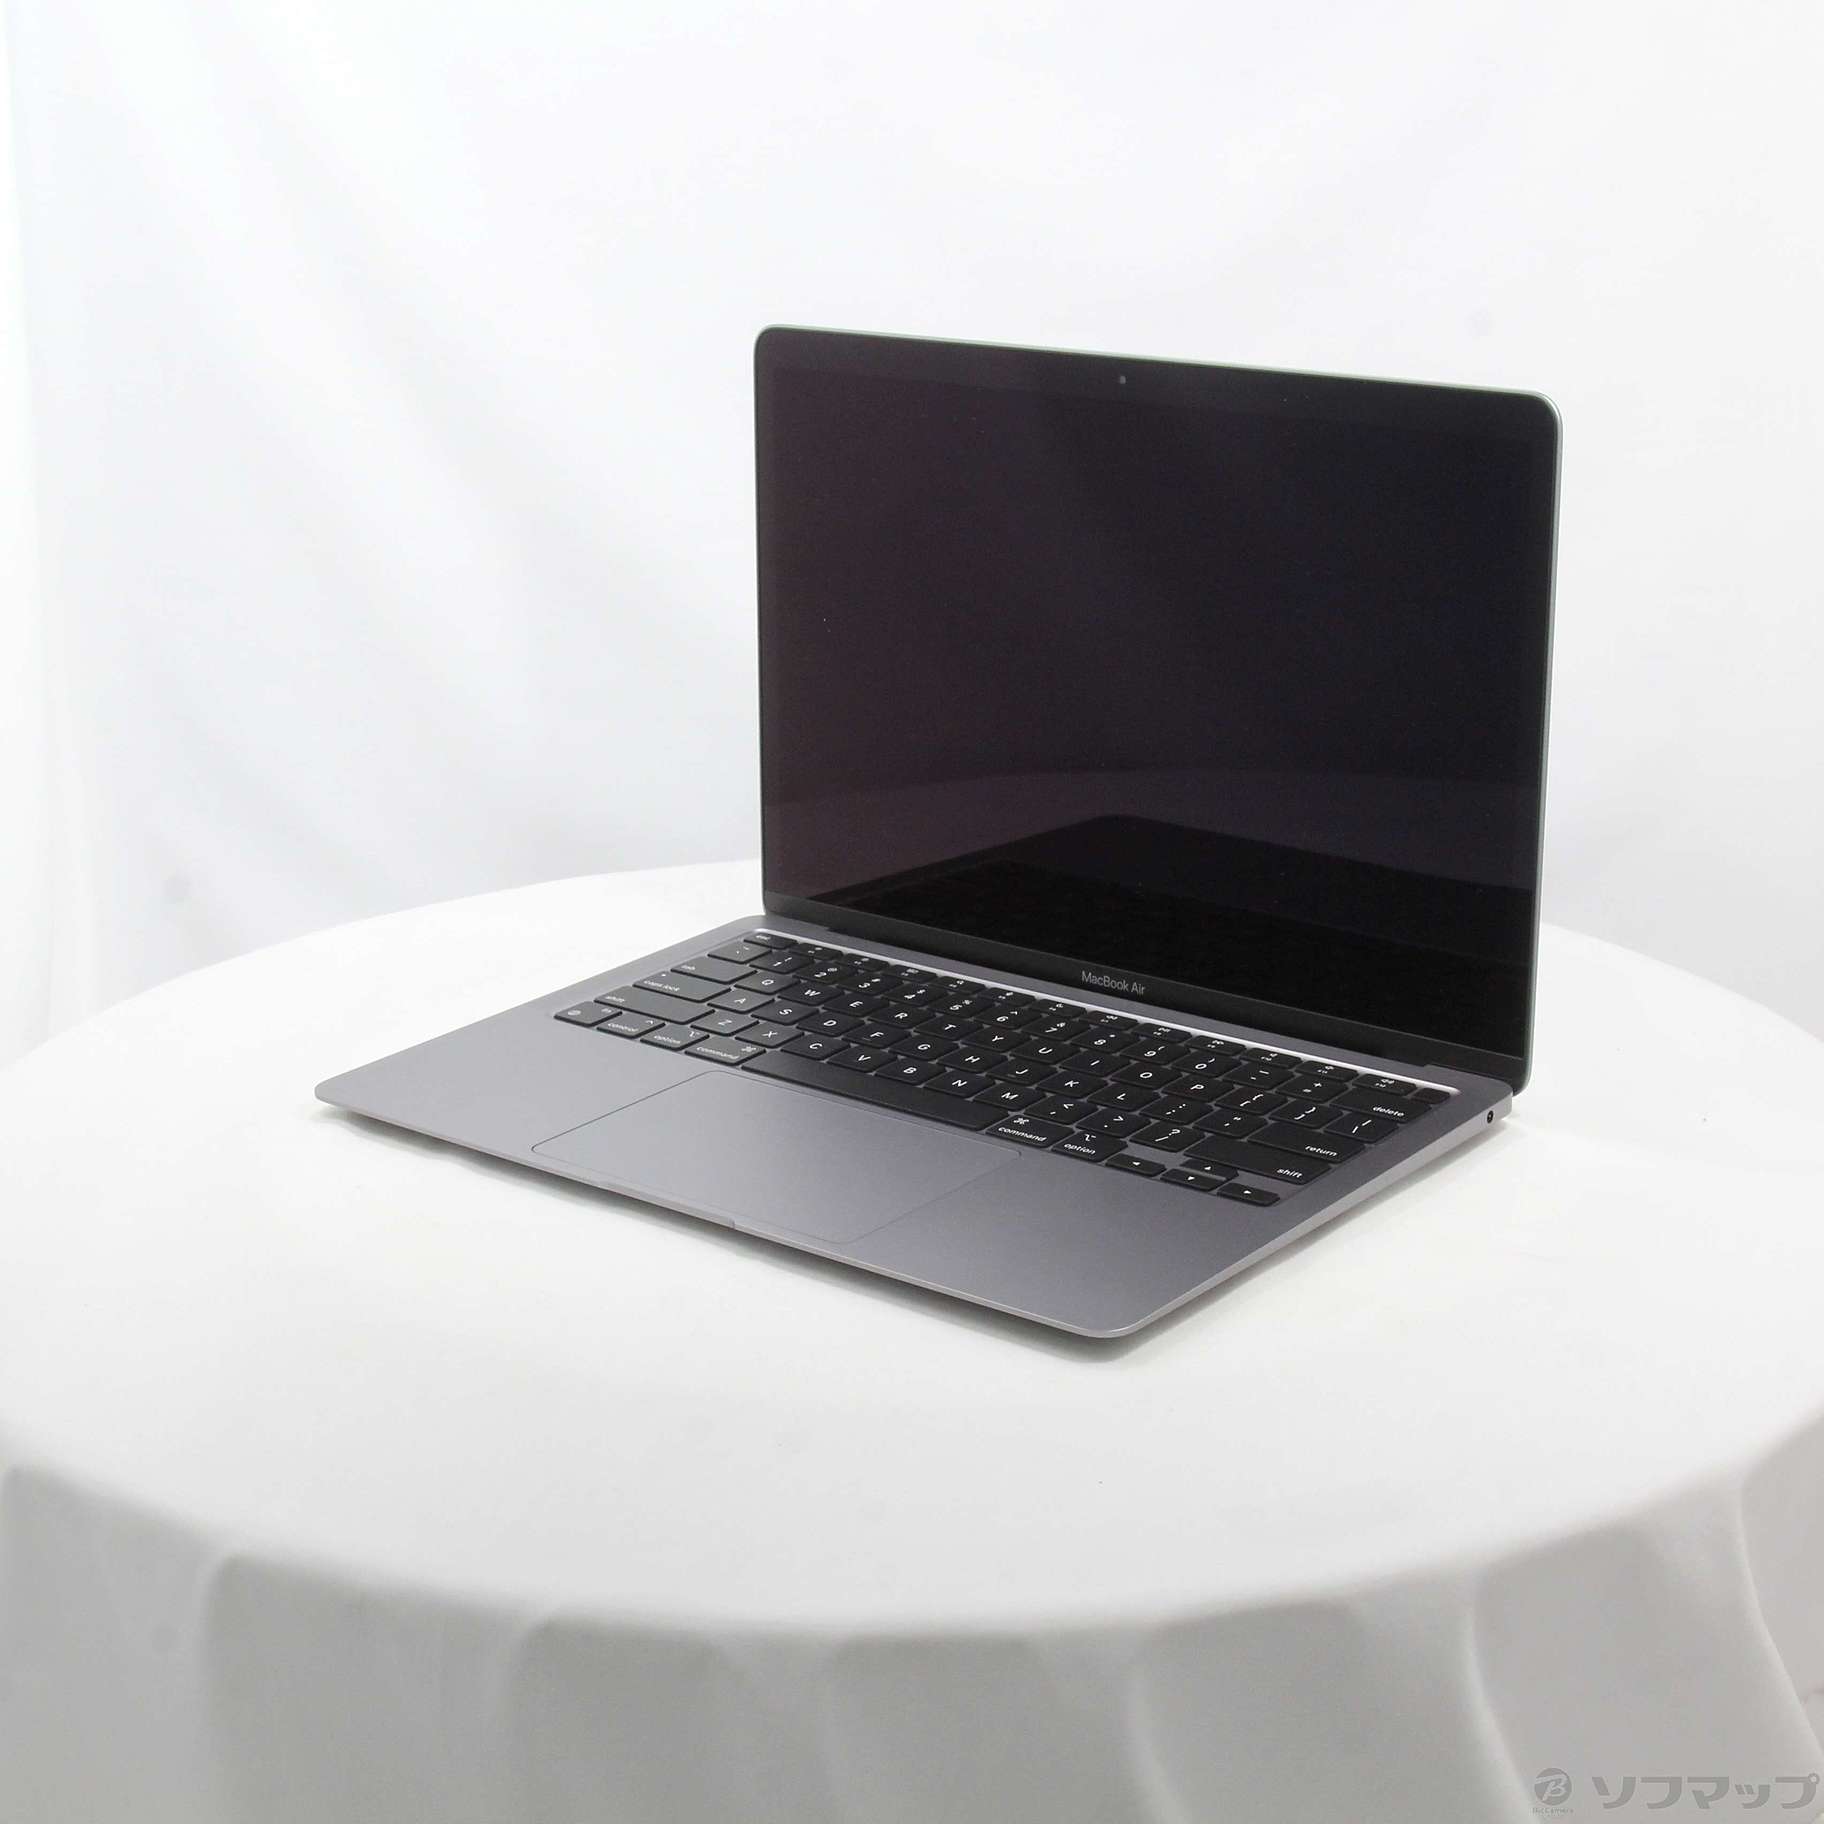 専用品 MacBook Air m1 スペースグレイ - www.sorbillomenu.com